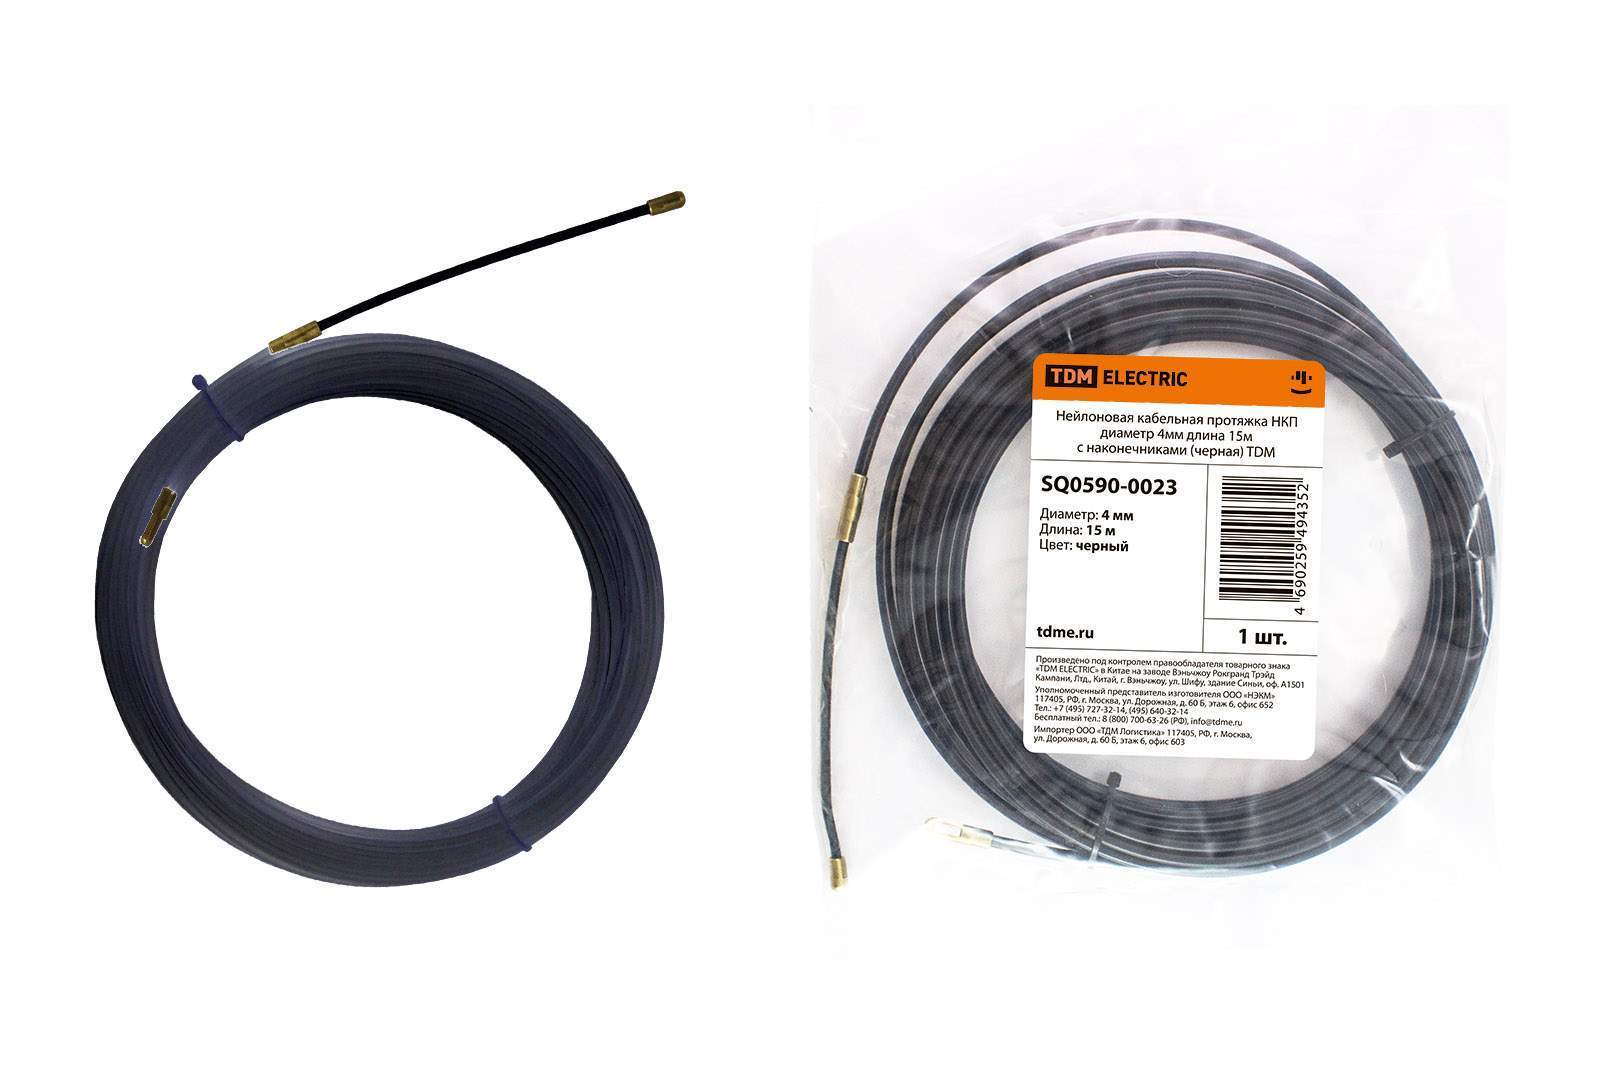 нейлоновая кабельная протяжка нкп диаметр 4мм длина 15м с наконечниками (черная) tdm от BTSprom.by